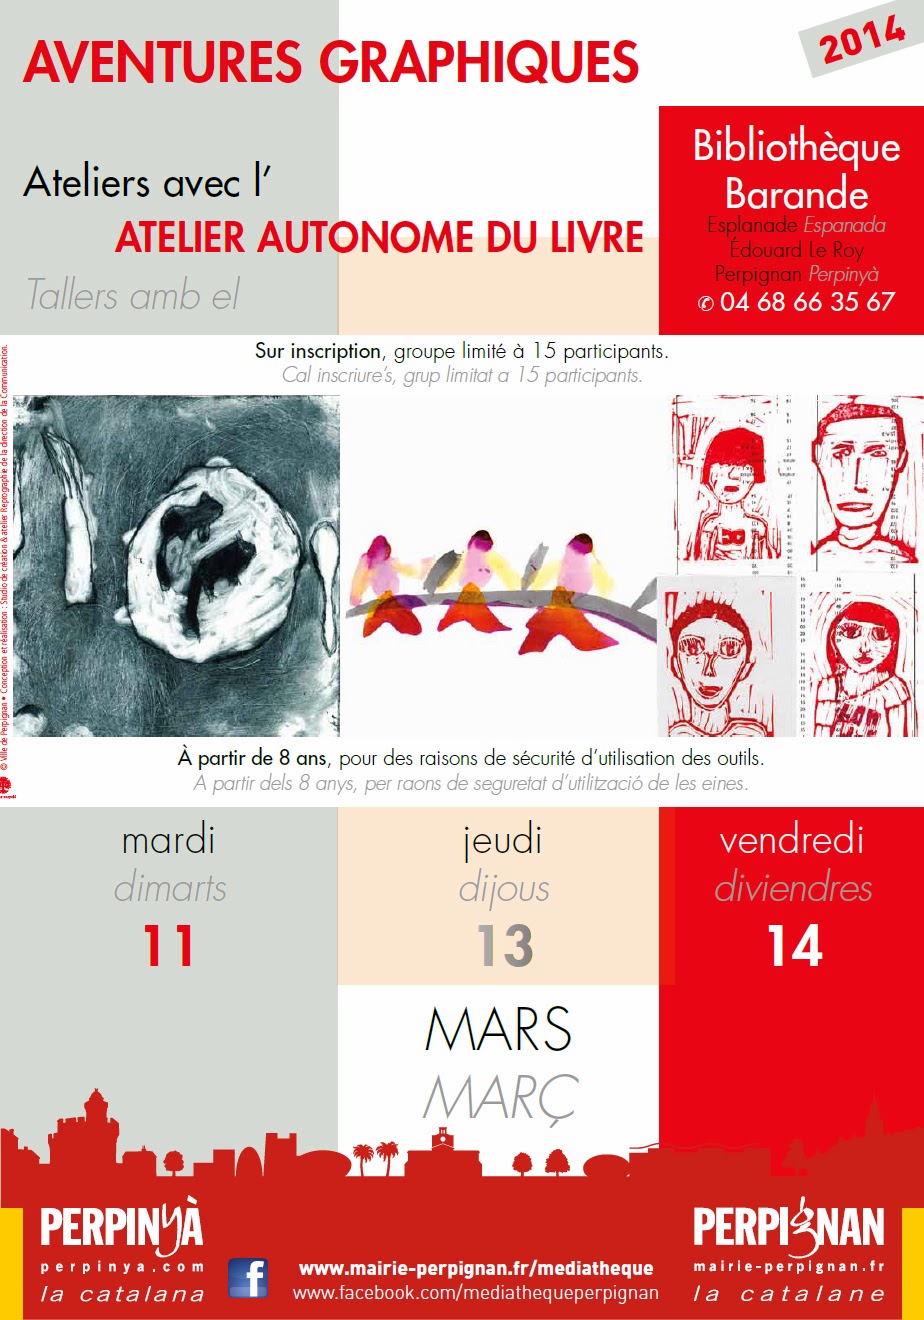 http://www.mairie-perpignan.fr/ca/news/atelier-autonome-livre